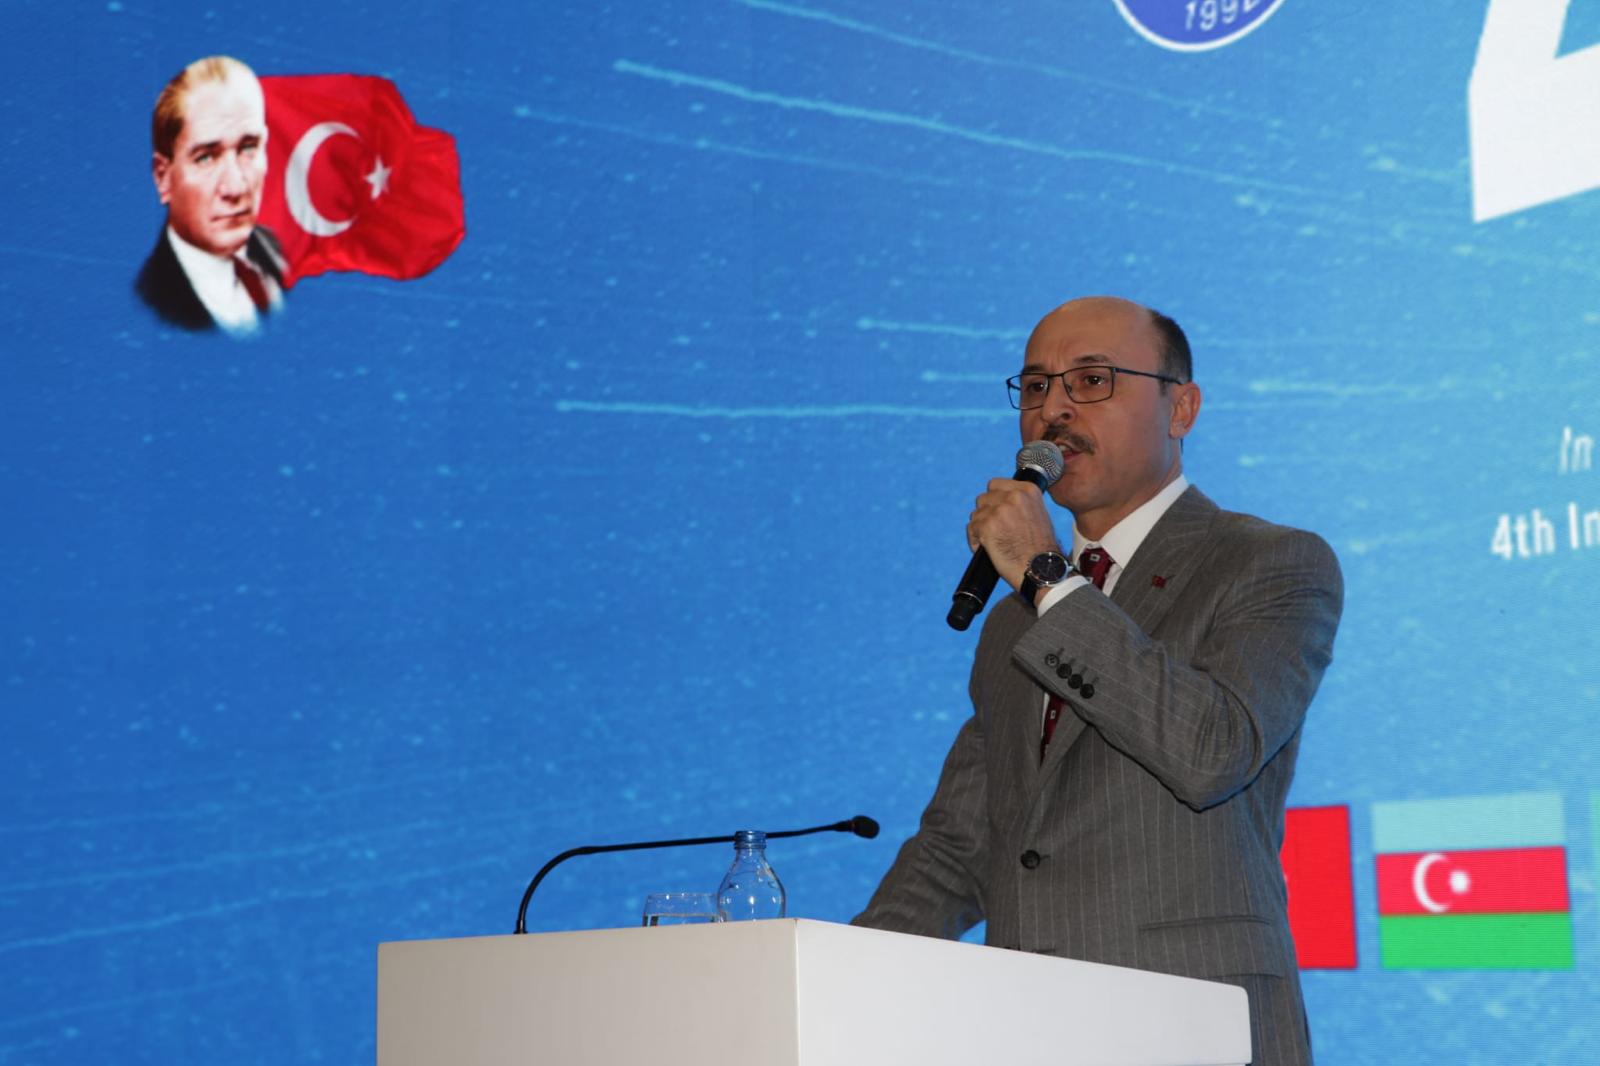 “Türkiye Cumhuriyeti’nin 100. Yılı Anısına” Düzenlediğimiz 4. Uluslararası Türk Dünyası Mühendislik ve Fen Bilimleri Kongresi Başladı.